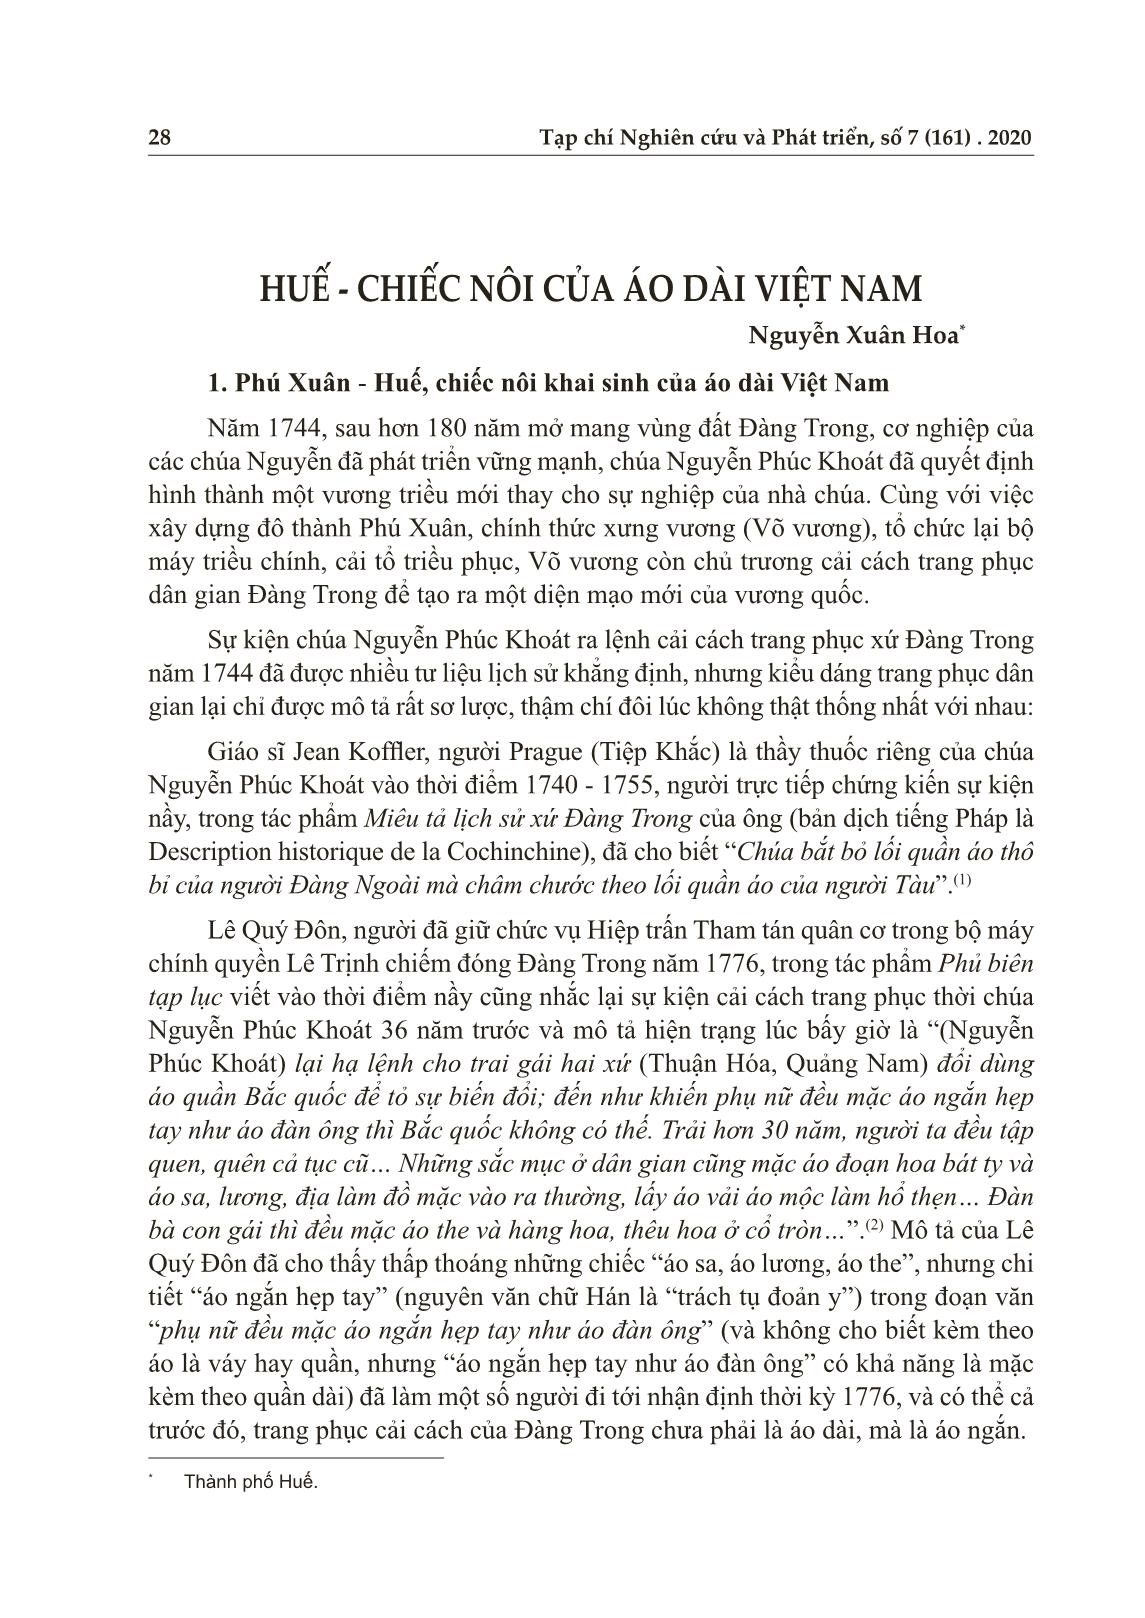 Huế - Chiếc nôi của áo dài Việt Nam trang 1